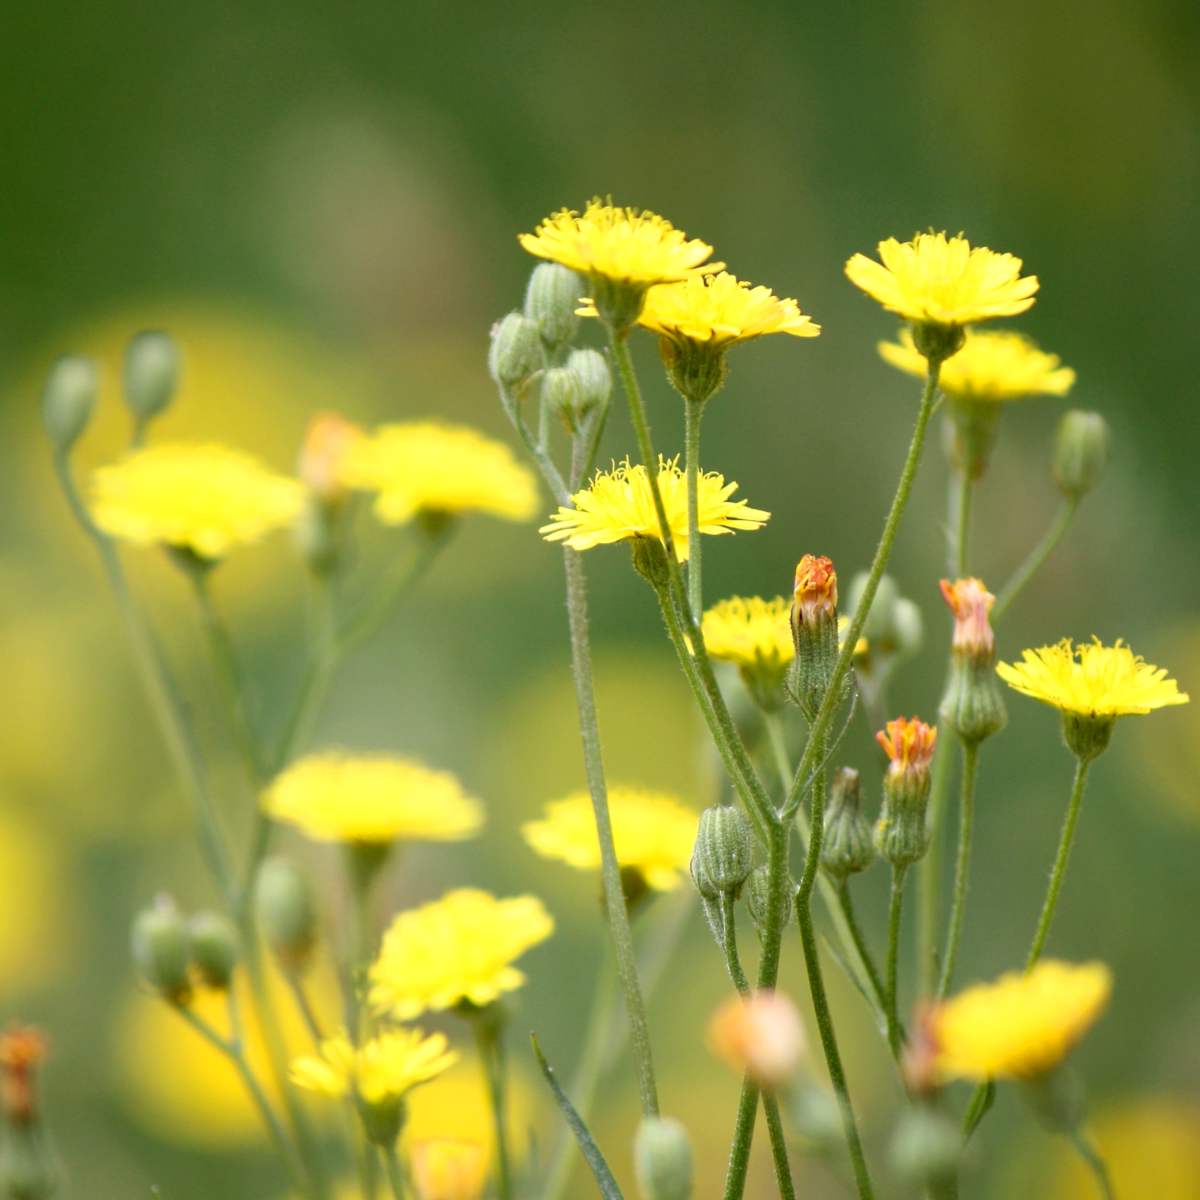 Weeds with health benefits include dandelion